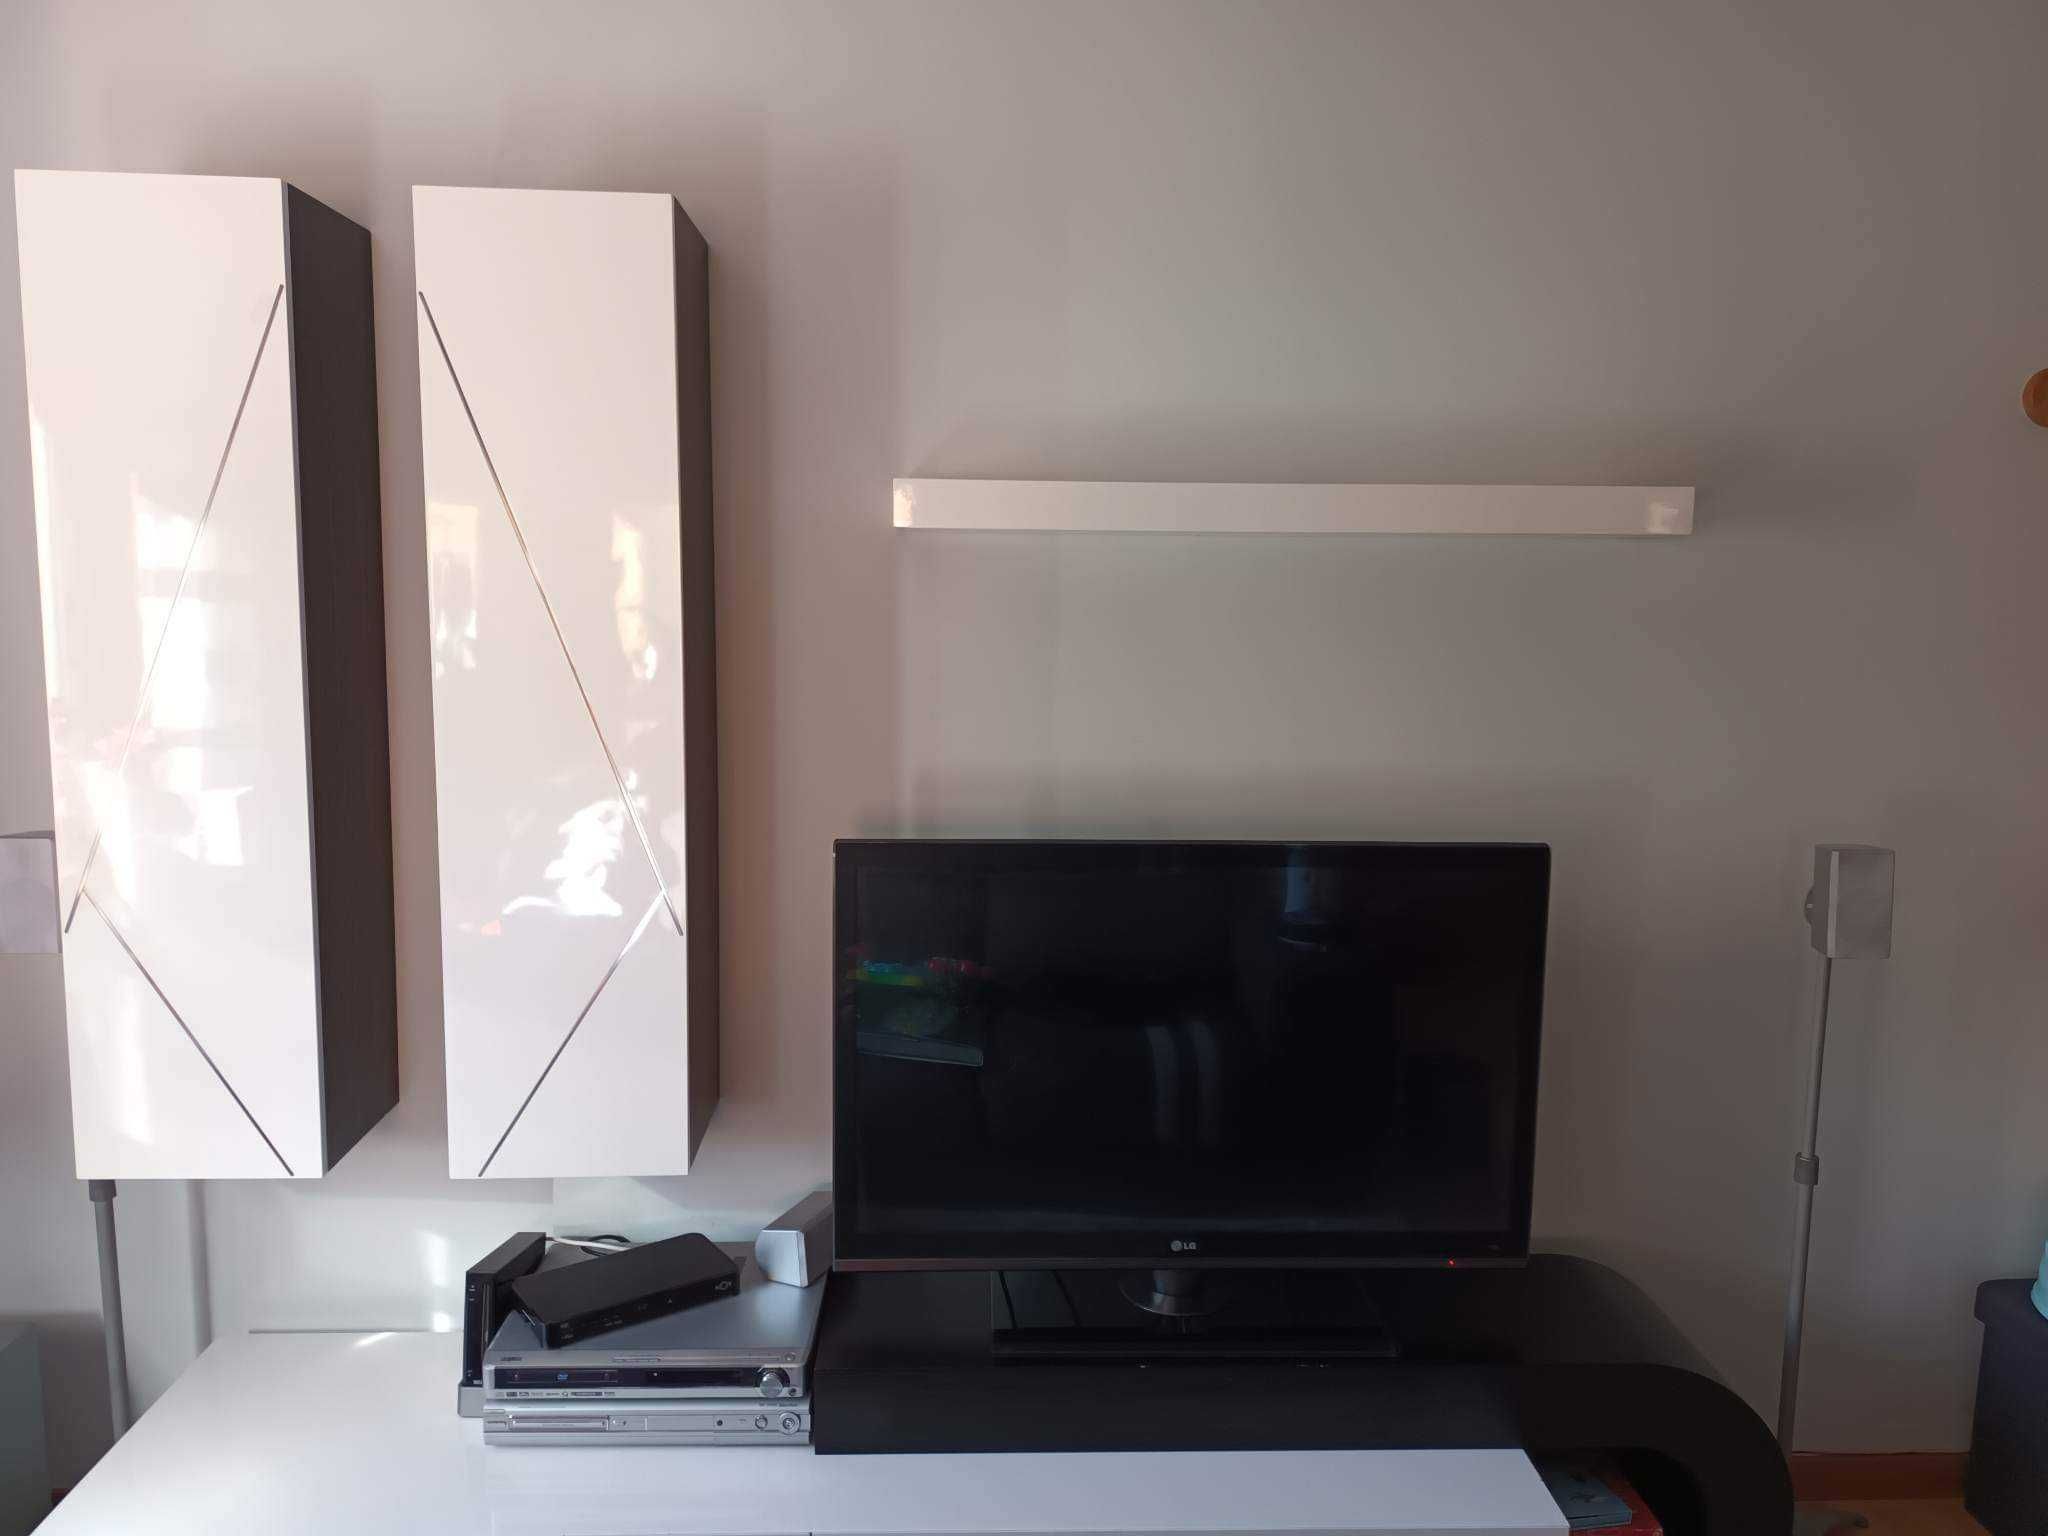 Movel TV com prateleira e dois módulos de parede